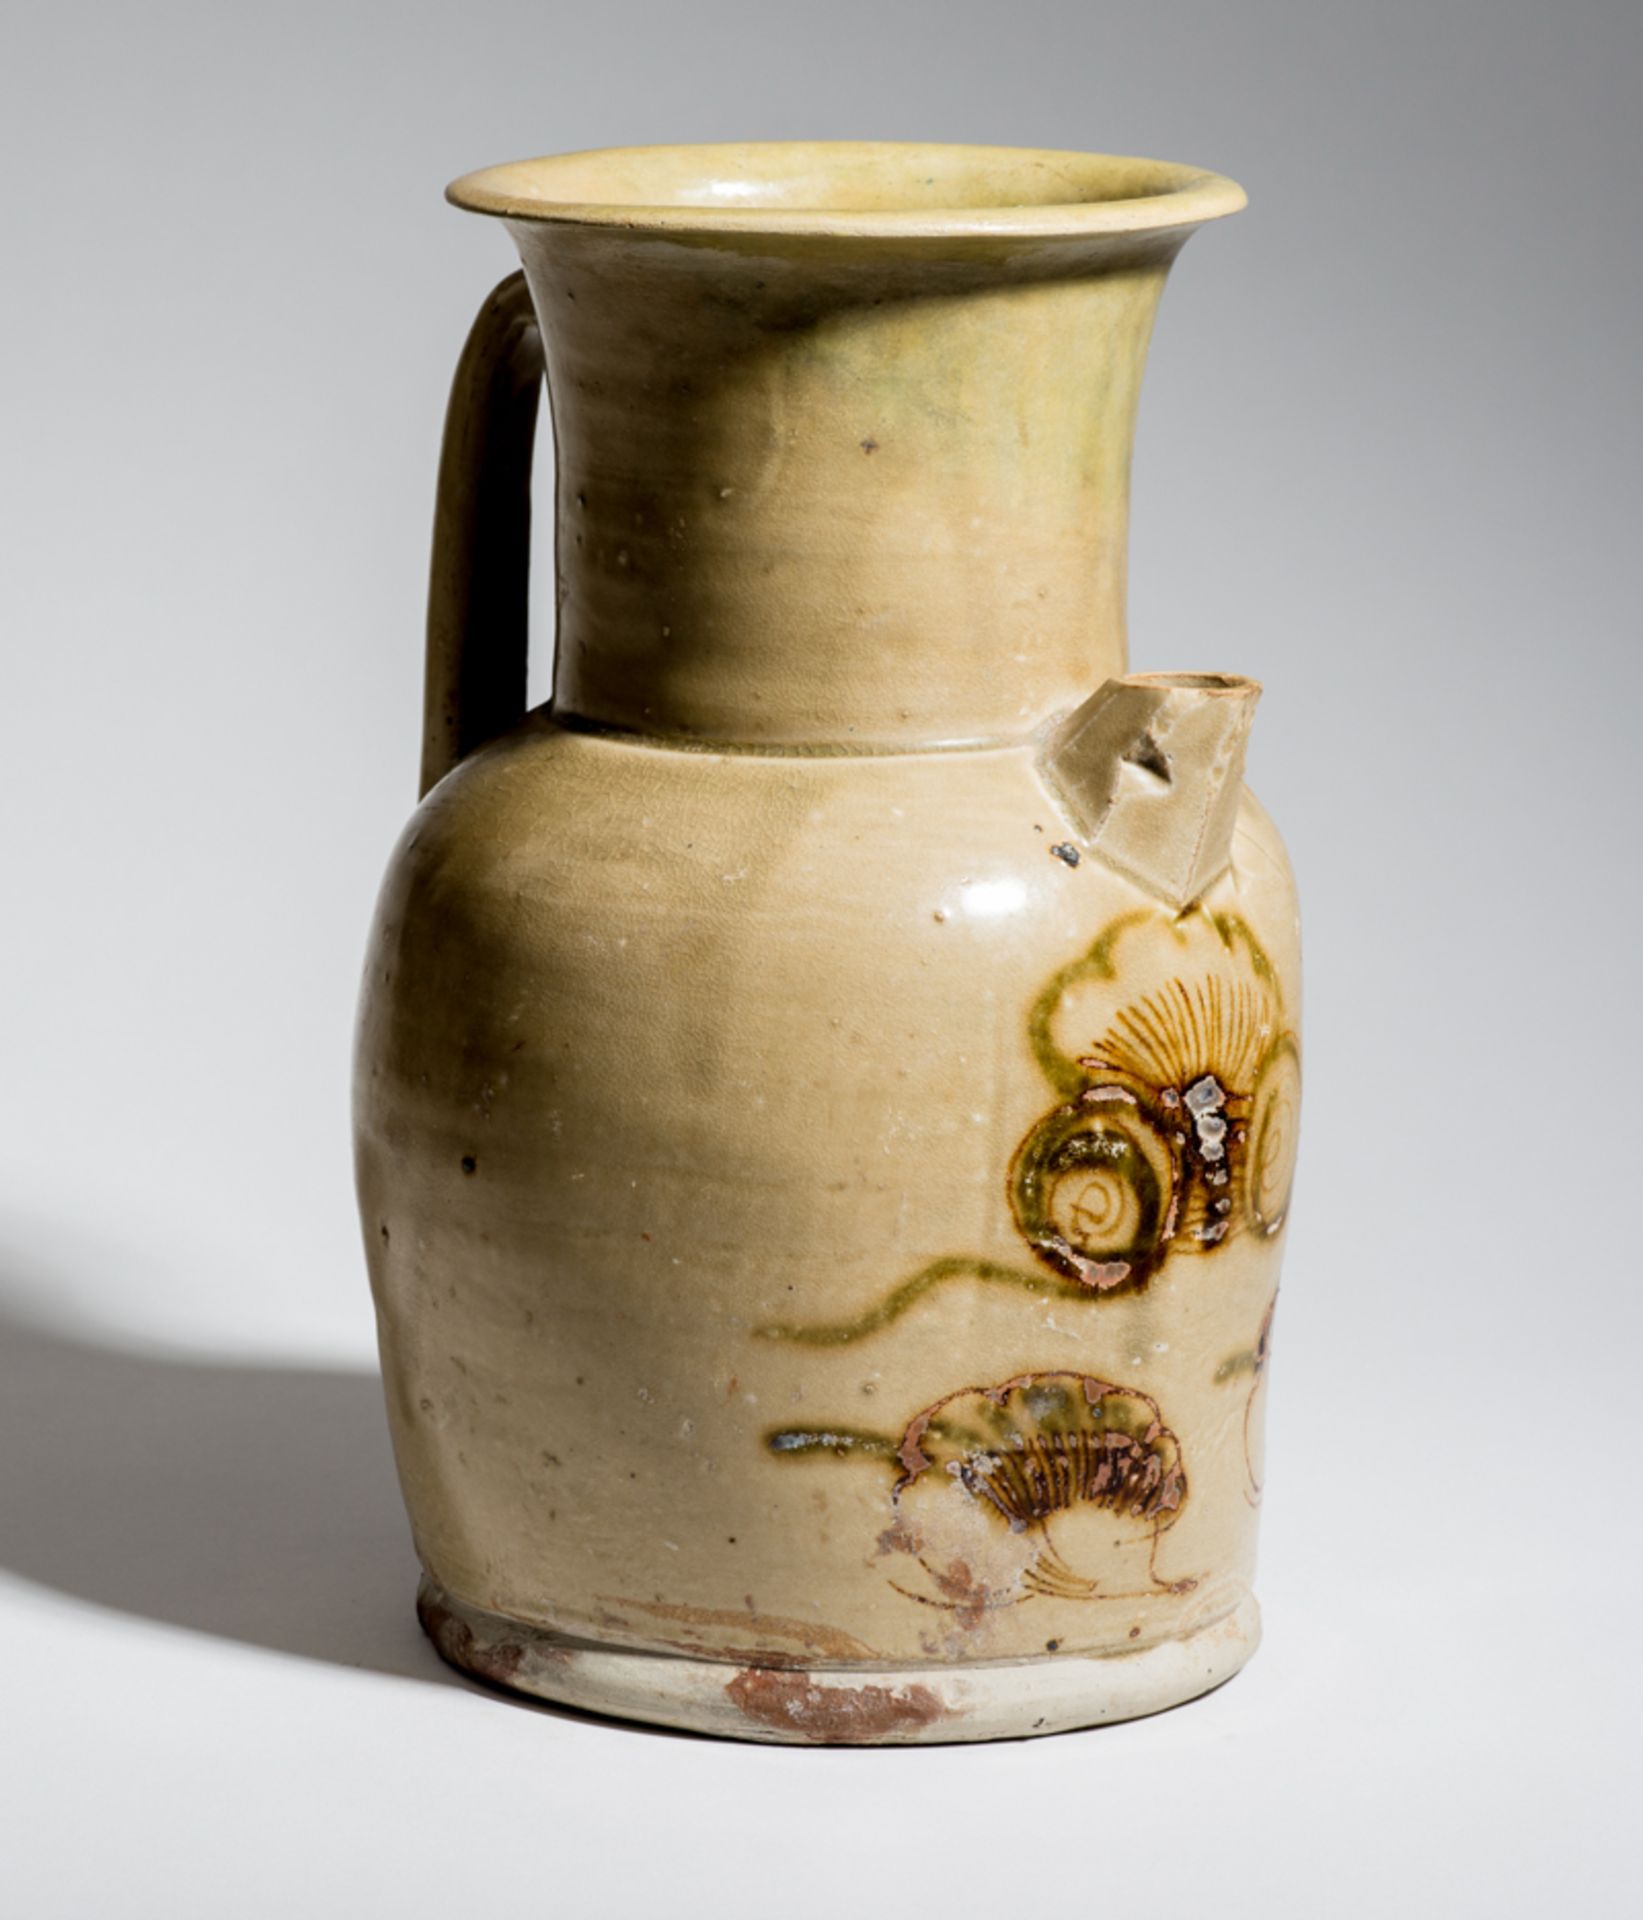 SELTENER WEINKRUG
Changsha-Keramik. China, Tang-Dynastie, ca. 9. bis 10. Jh.Eine attraktive, große